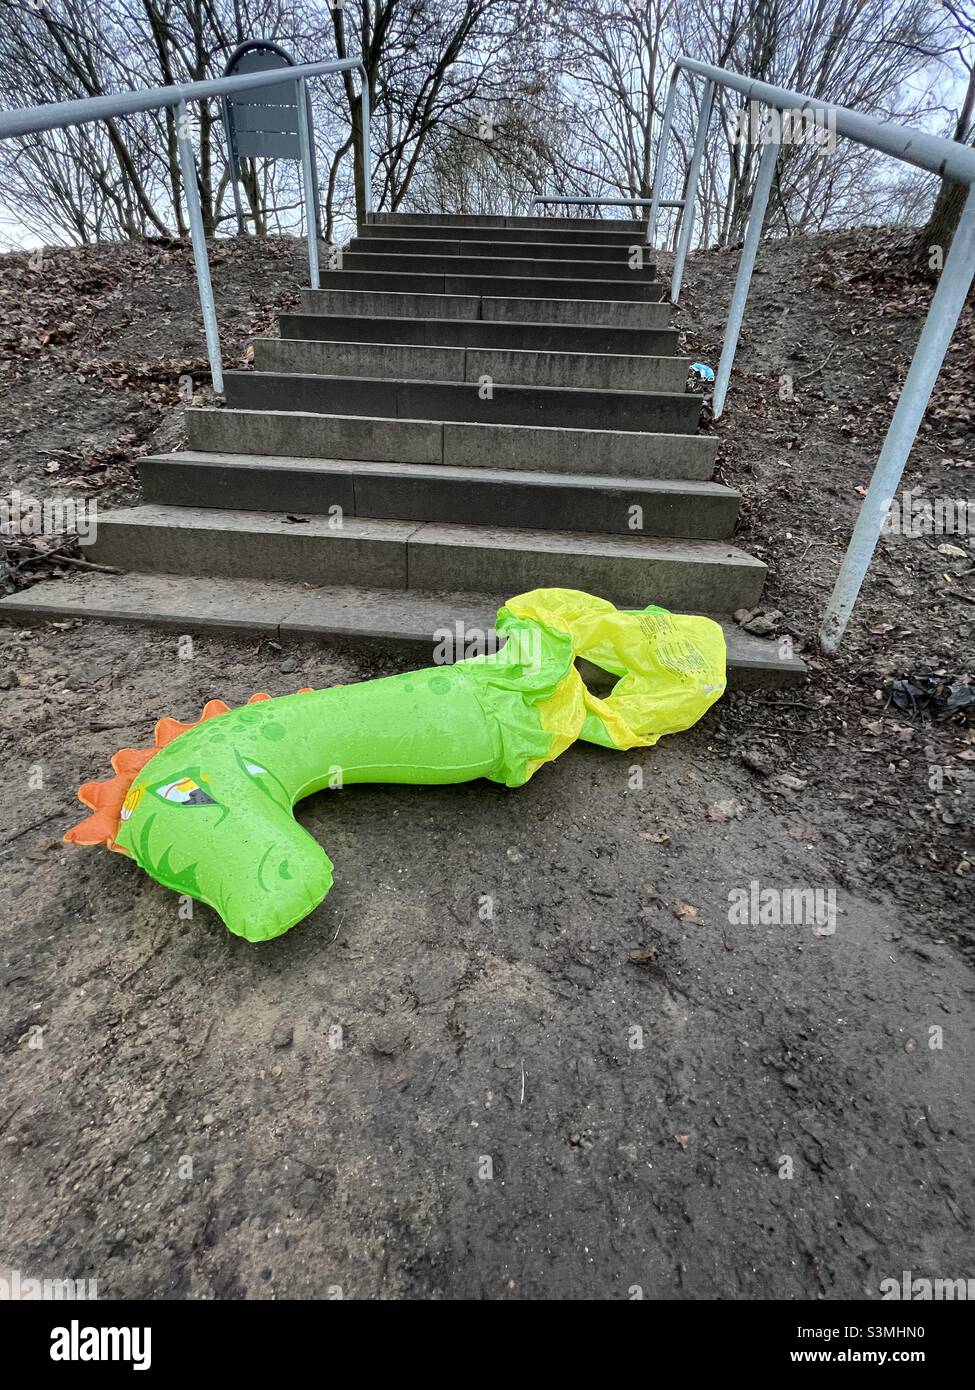 Un jouet gonflable vert - un dinosaure ou un dragon - abandonné, endommagé, au bas des escaliers sur le sol.Une triste histoire d'être laissé, blessé, perdu. Banque D'Images